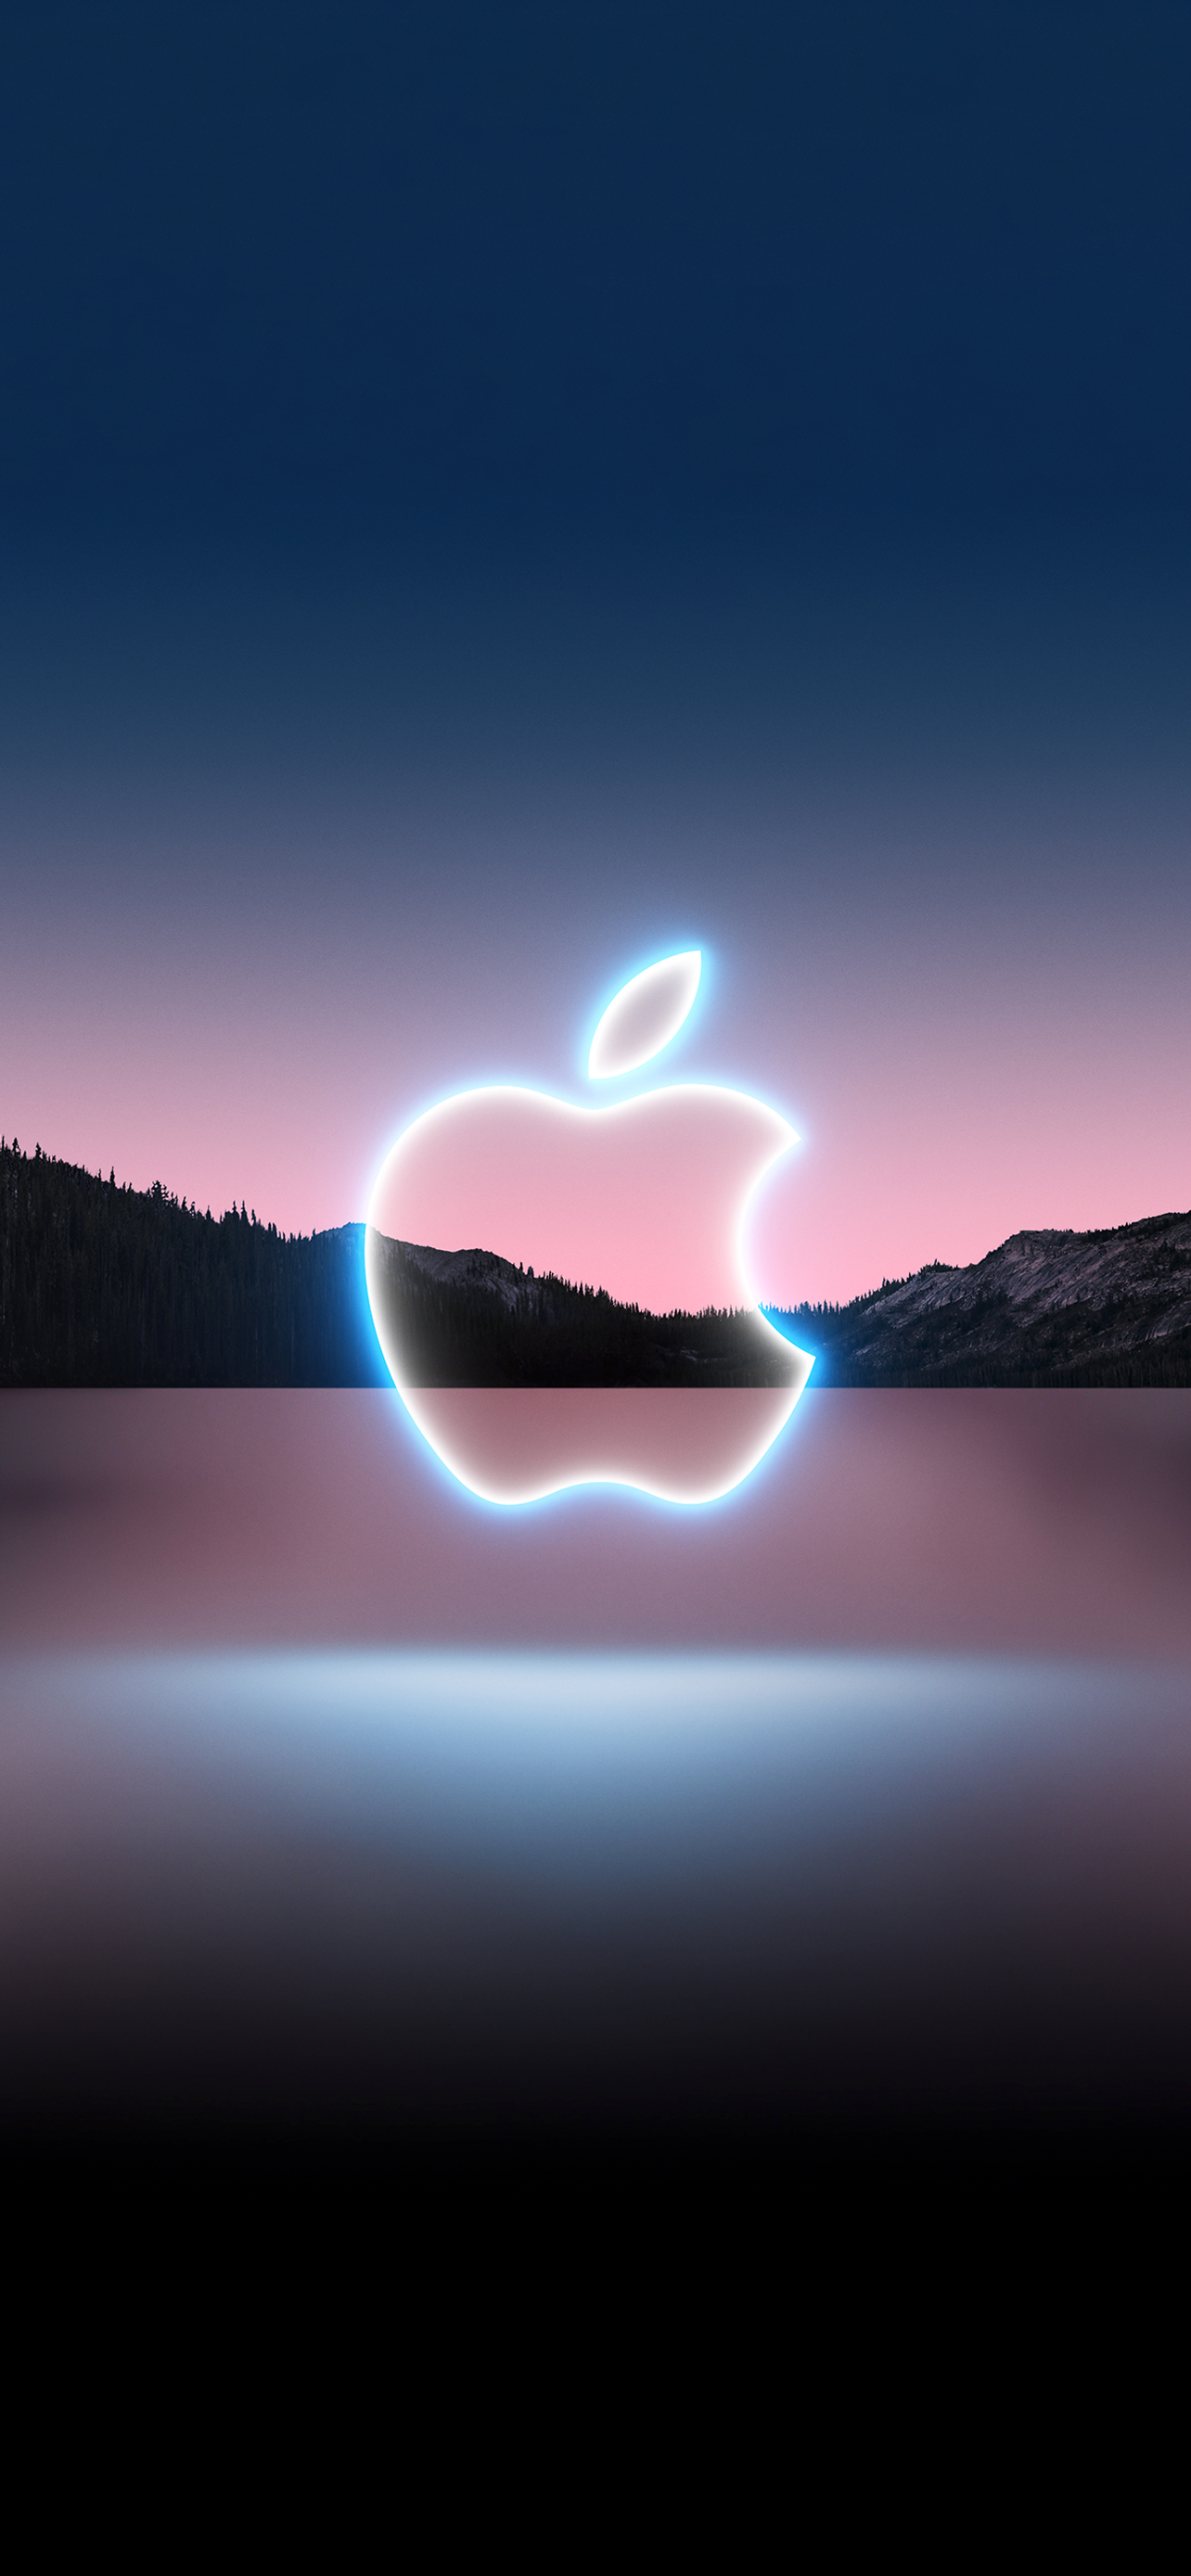 2021苹果秋季发布会壁纸下载 还有长沙首家Apple Store壁纸